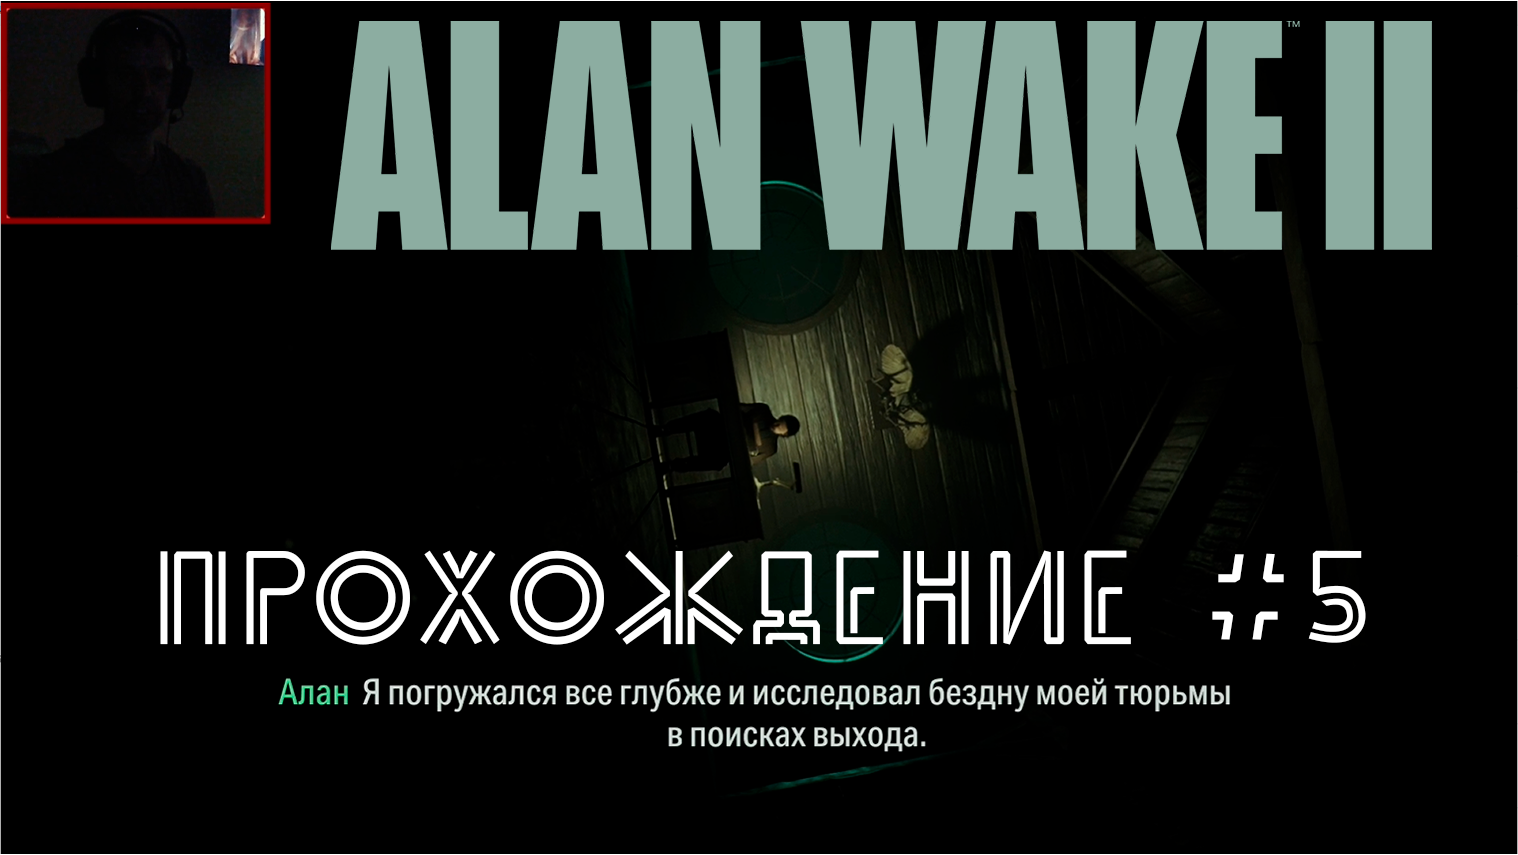 Alan Wake 2. Прохождение №5. Пытаемся понять что тут происходит